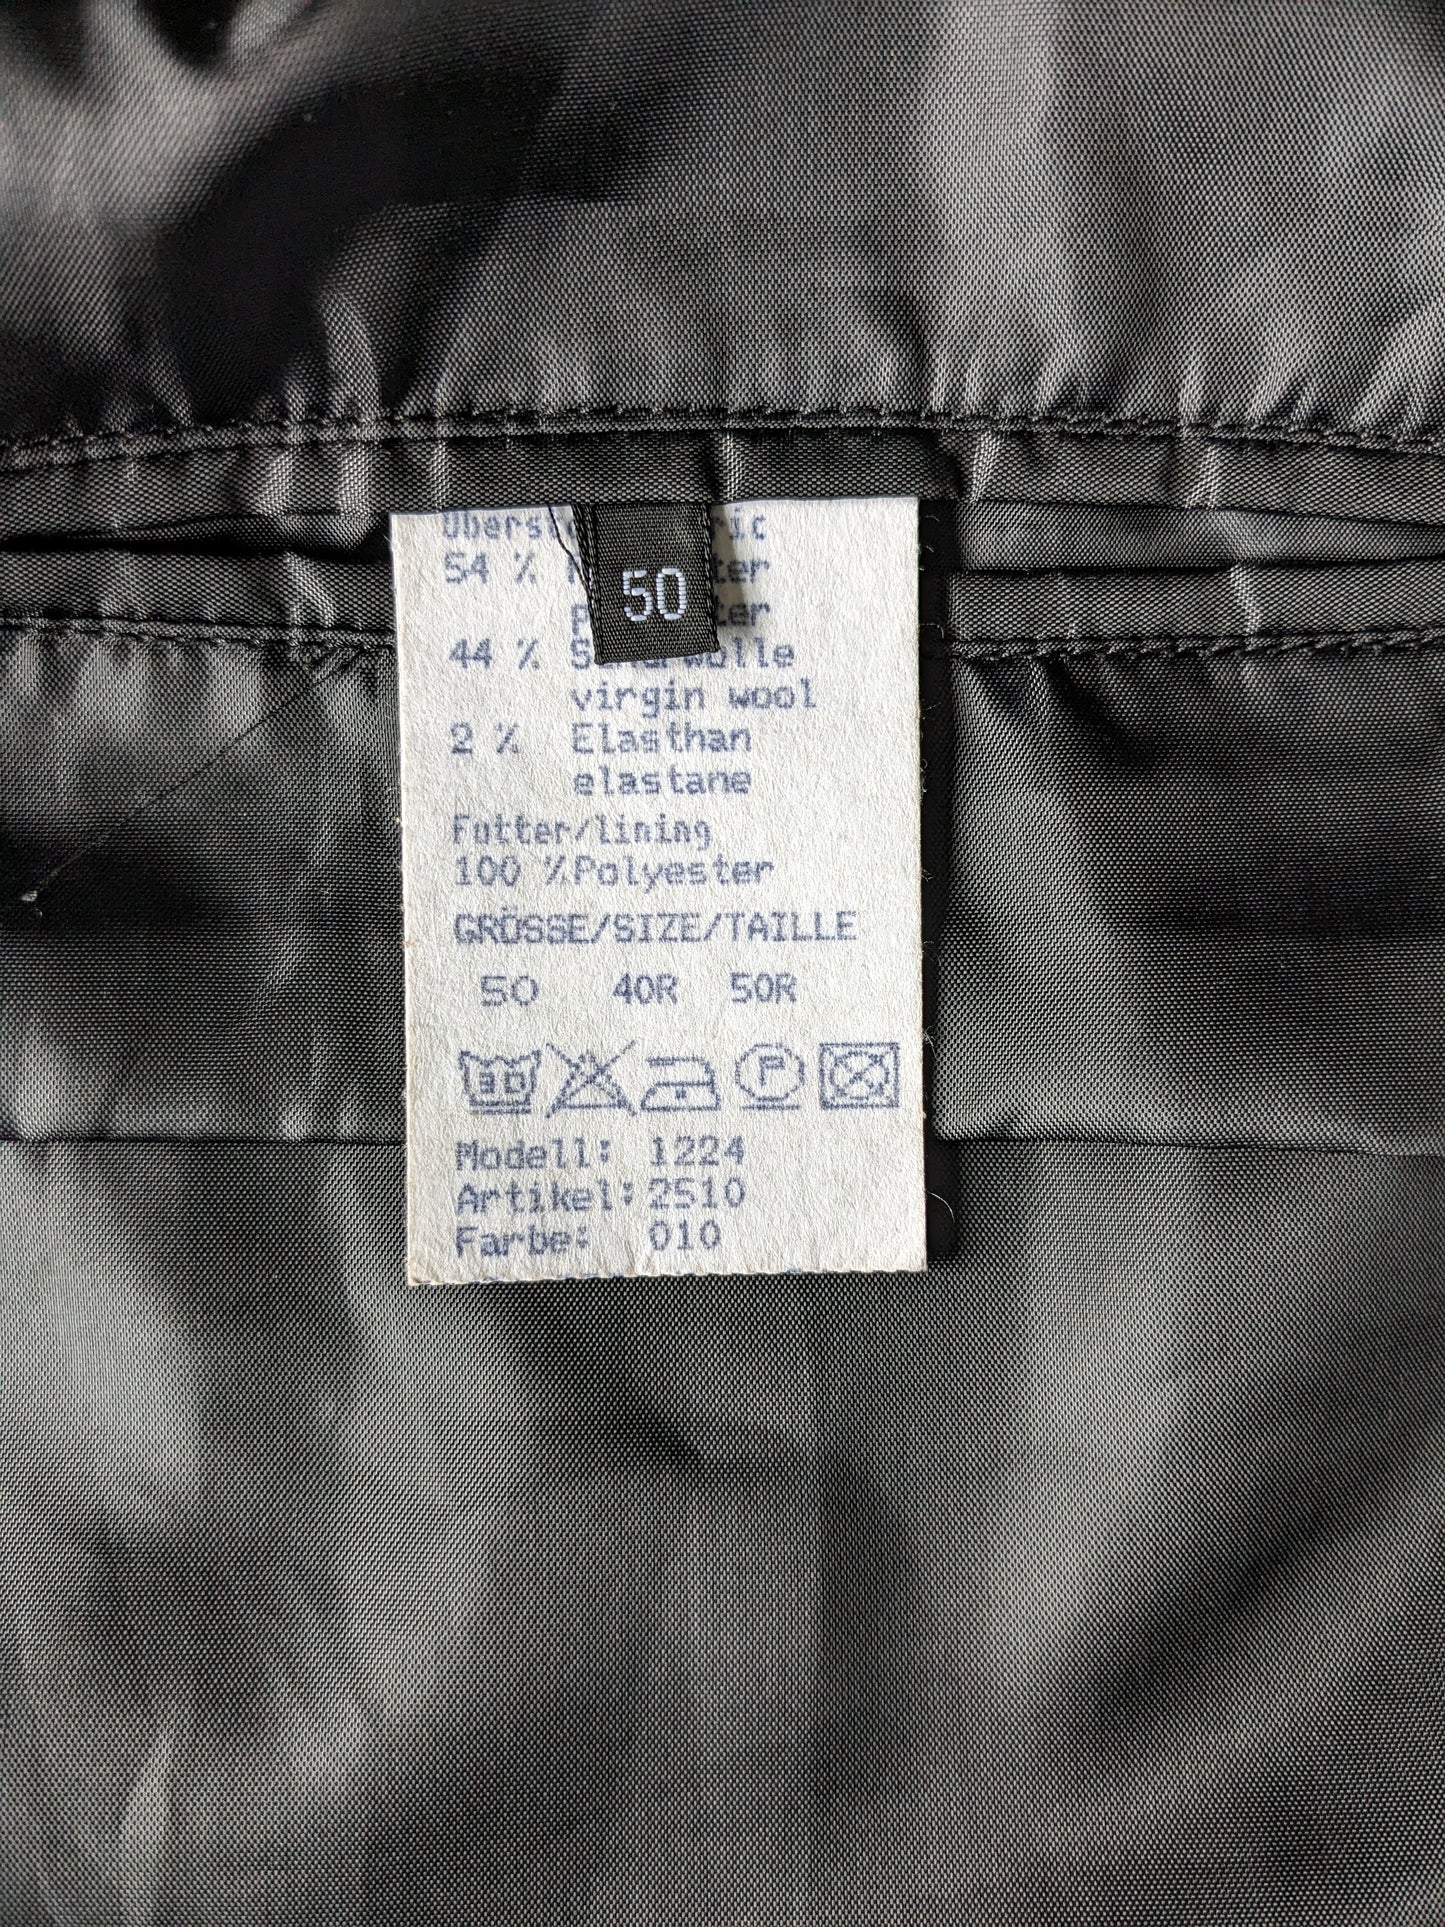 Gilet di lana Greiff. Colorato nero. Taglia 50 / M. 1 tasca interna. #336.